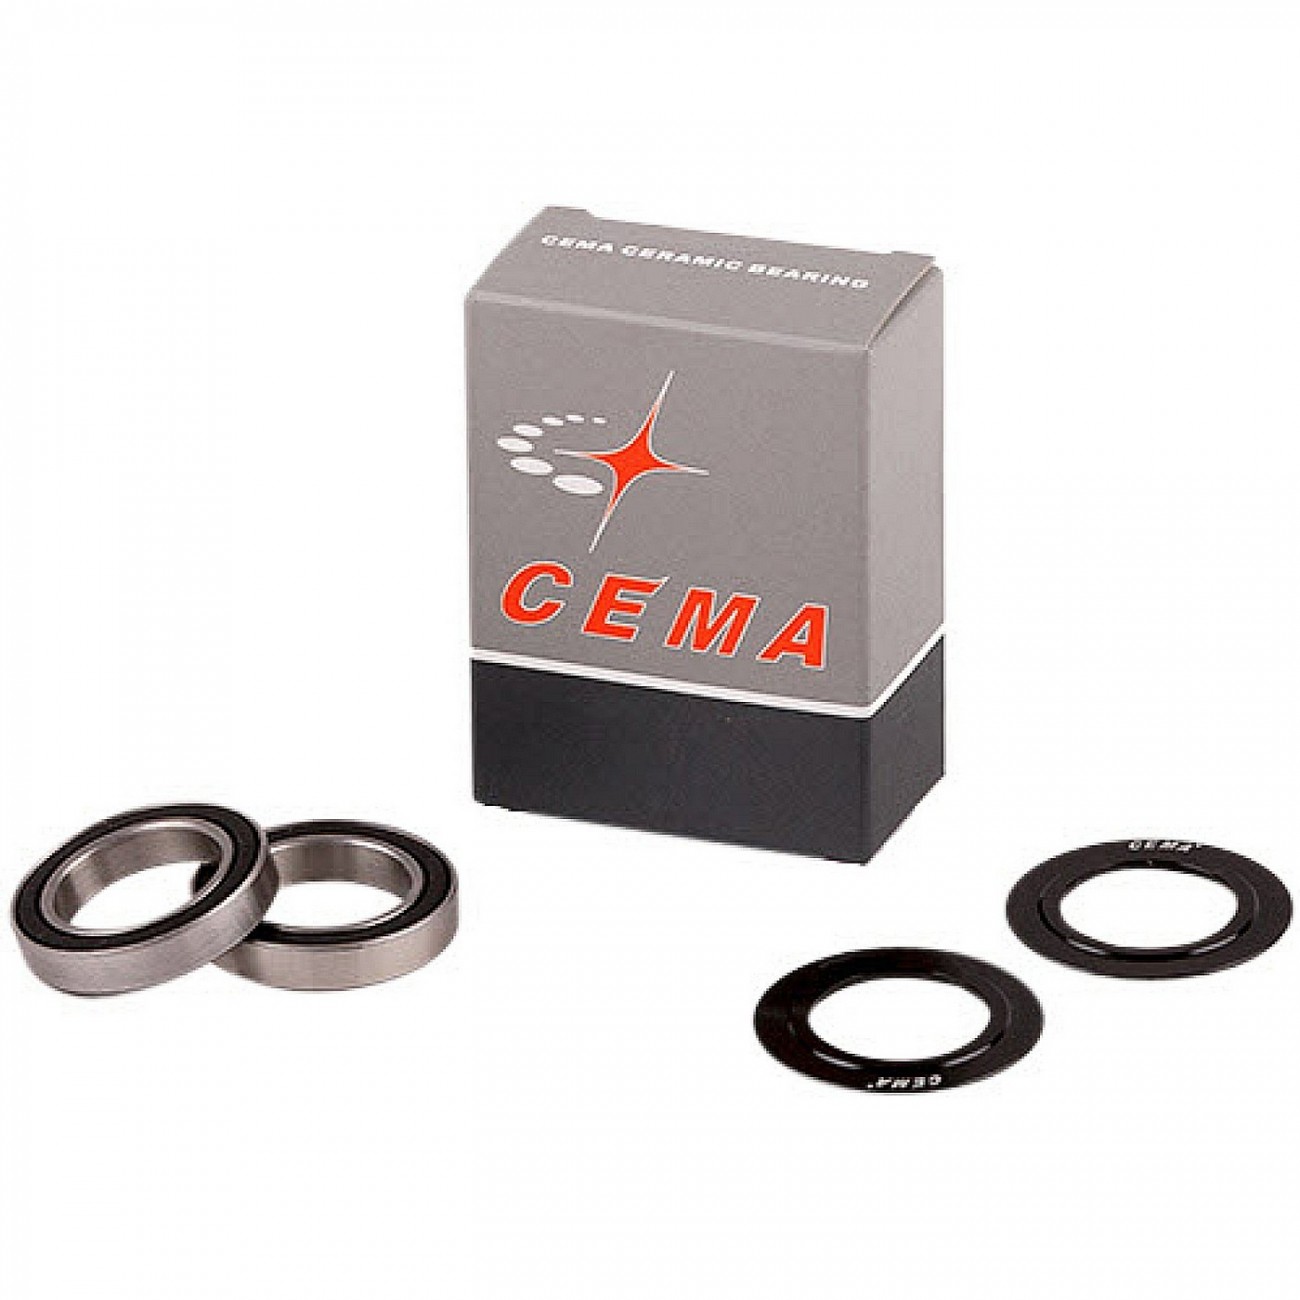 Ersatzteillagersatz für cema bb enthält 2 lager und 2 abdeckungen cema 30 mm – edelstahl – schwarz - 1